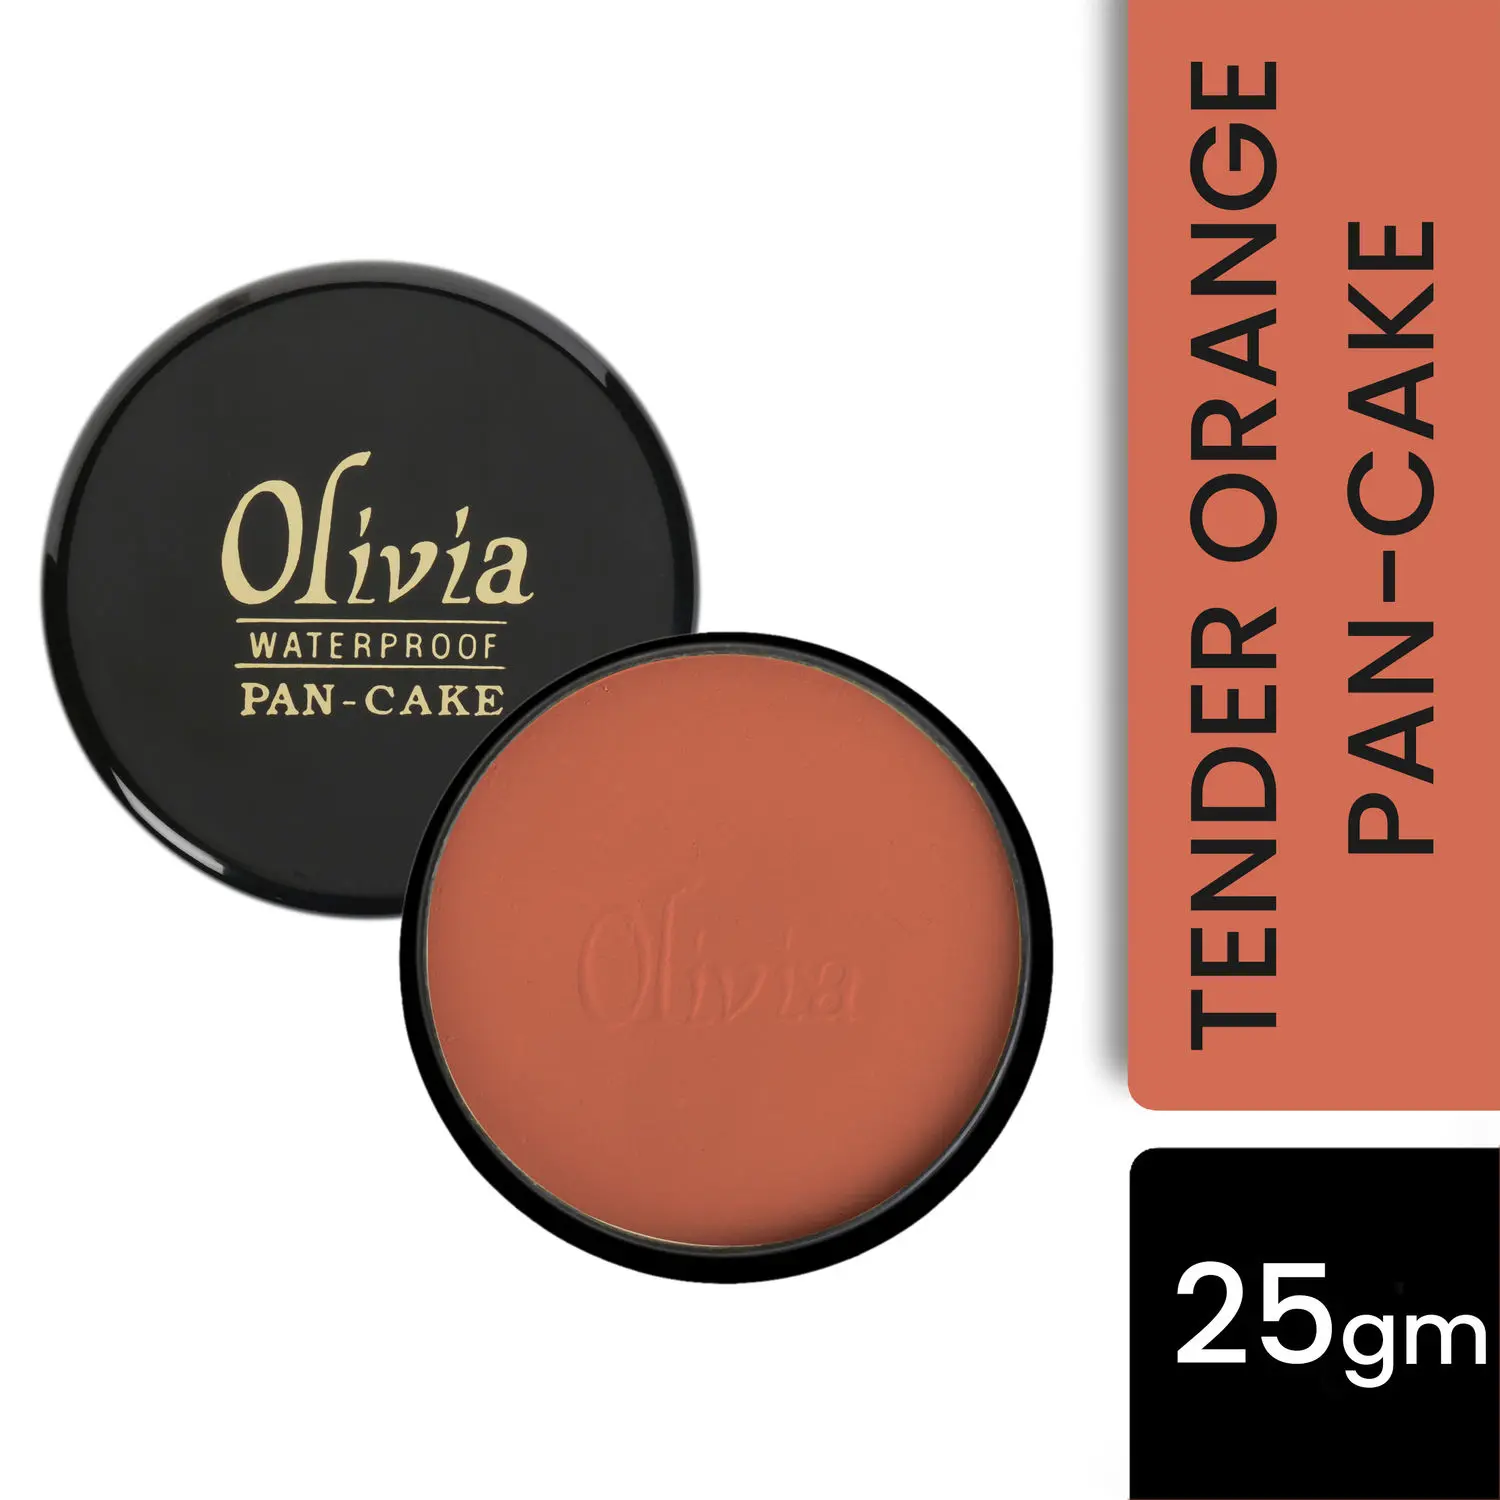 Olivia Waterproof Pan-Cake Tender Orange (25 g)